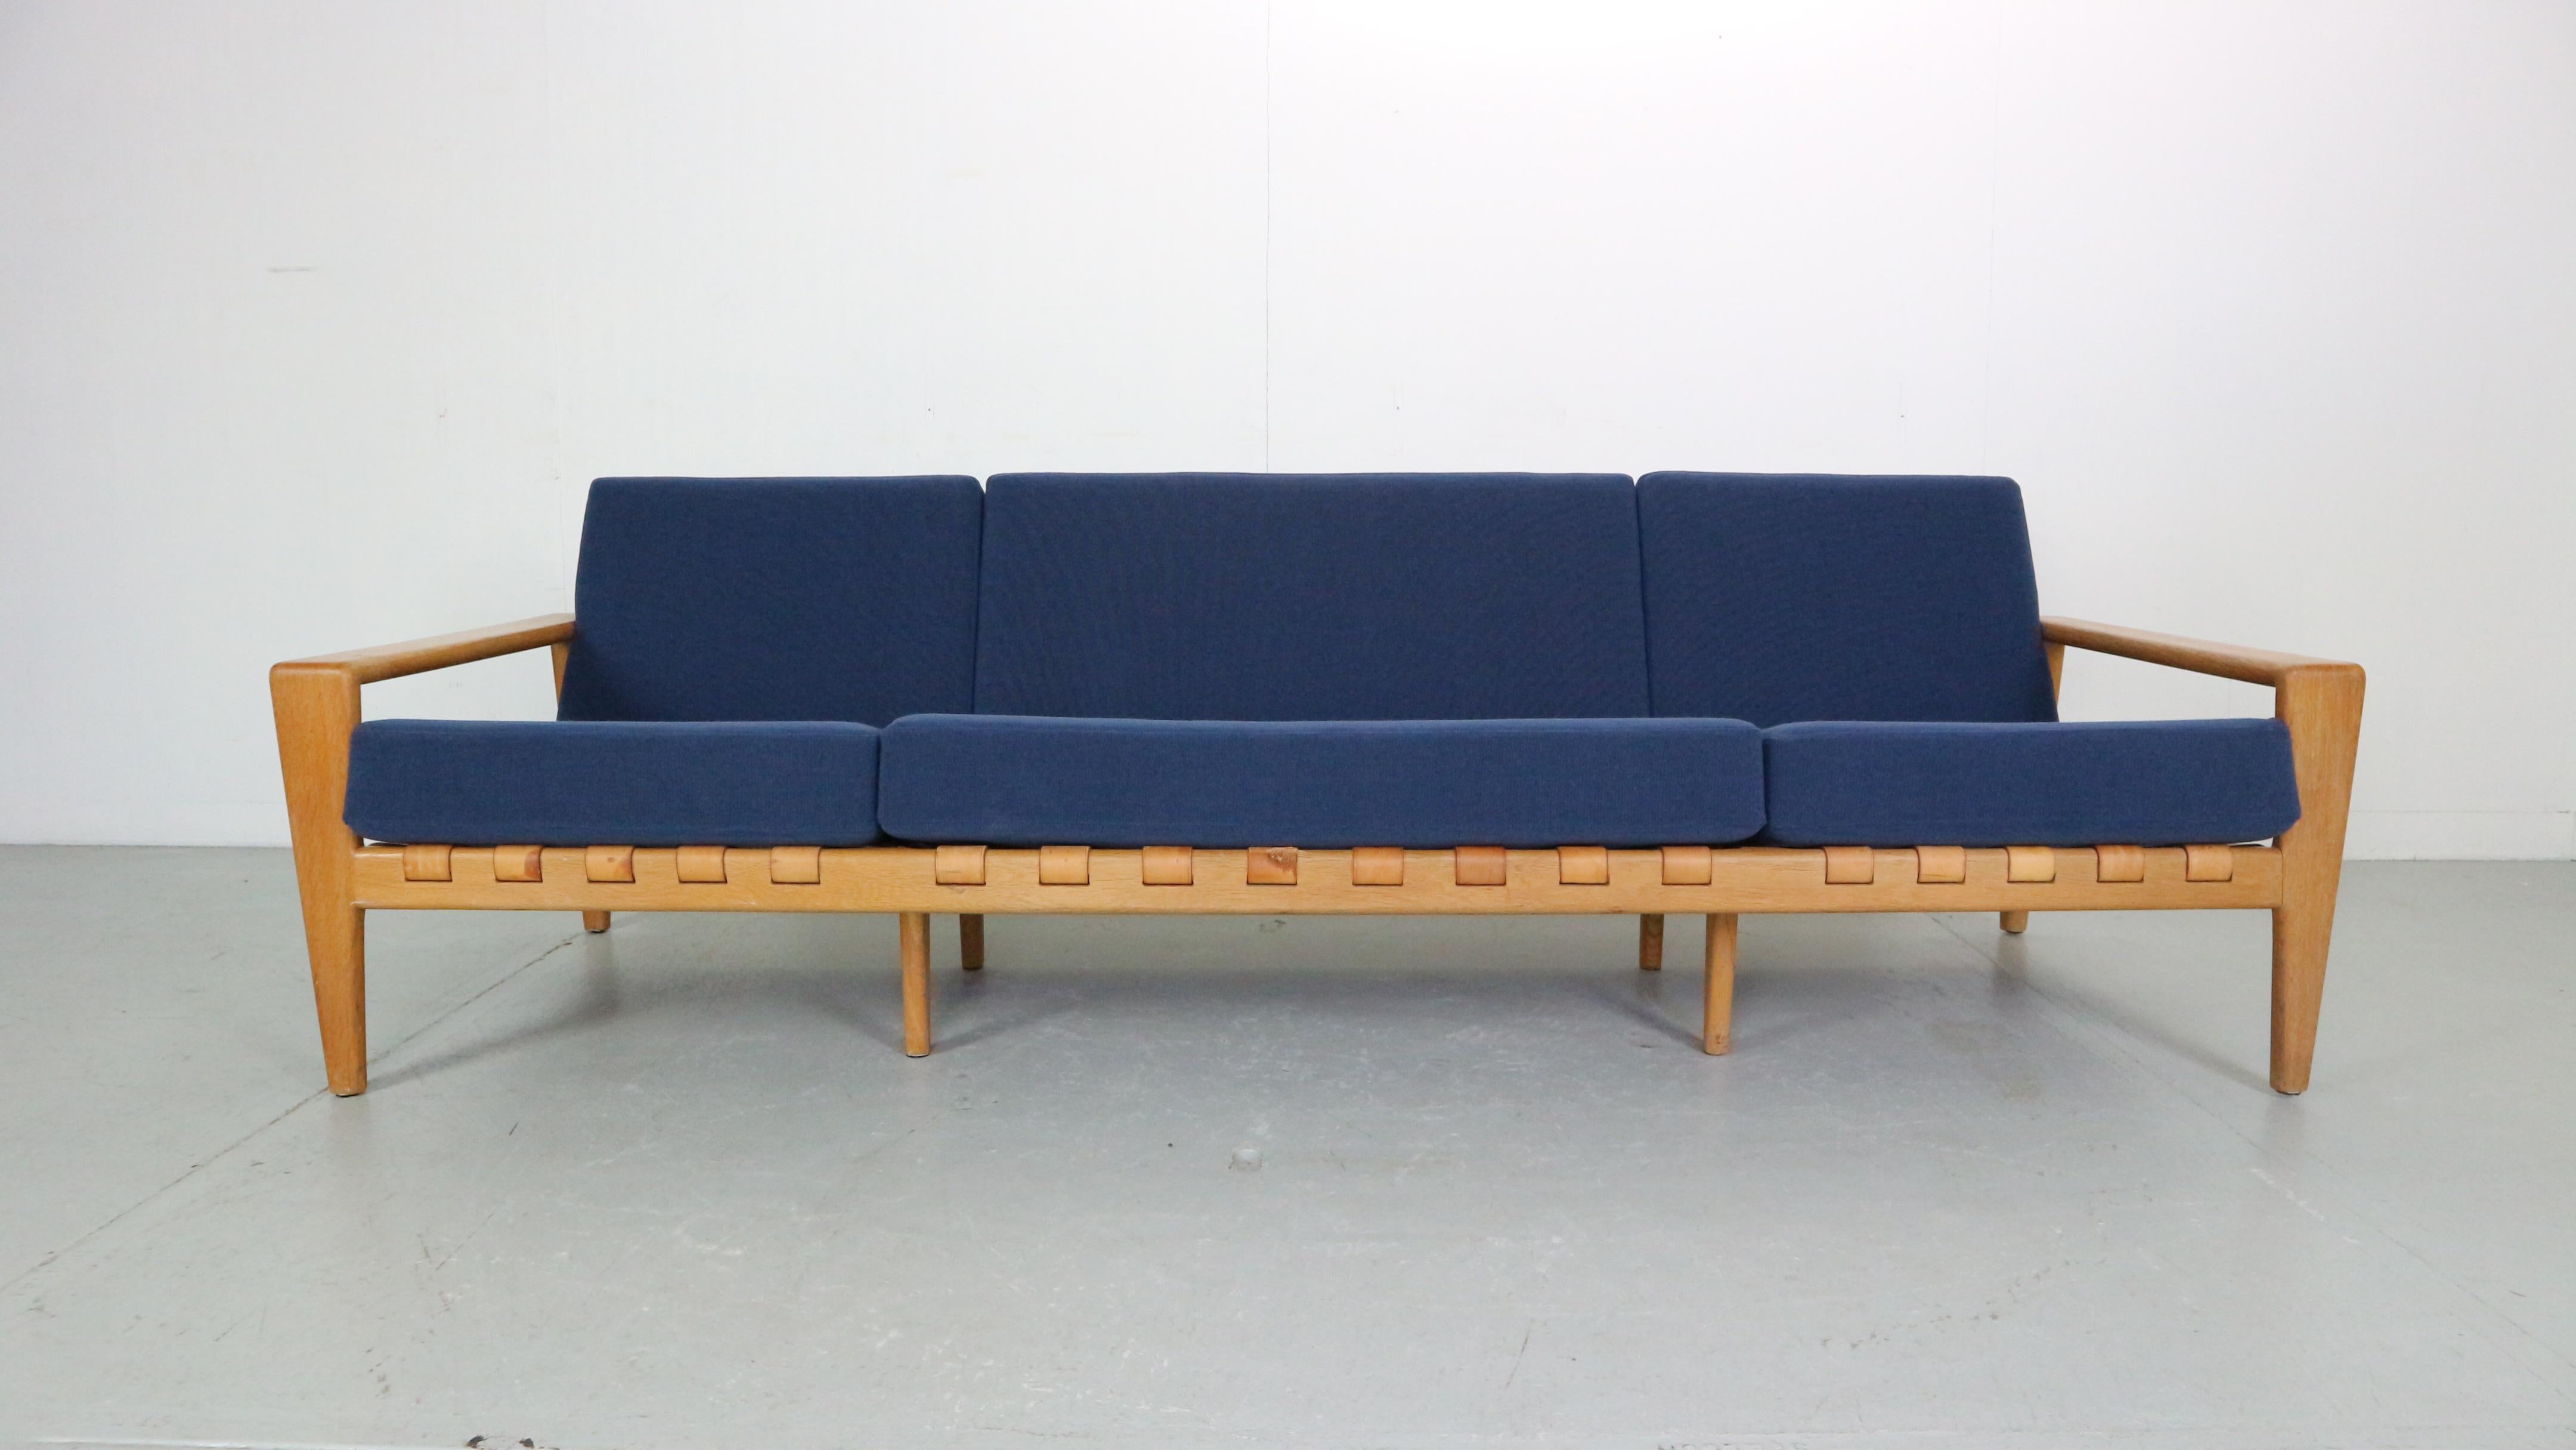 Seltenes schwedisches Design-Sofa mit 3,5 Sitzplätzen aus Eiche, Modell Bodö. Entworfen von Svante Skogh für Säffle Möbler in den 1950er/60er Jahren. Dieses kultige Designerstück hat sechs lose Kissen, die mit neuem Schaumstoff für einen noch